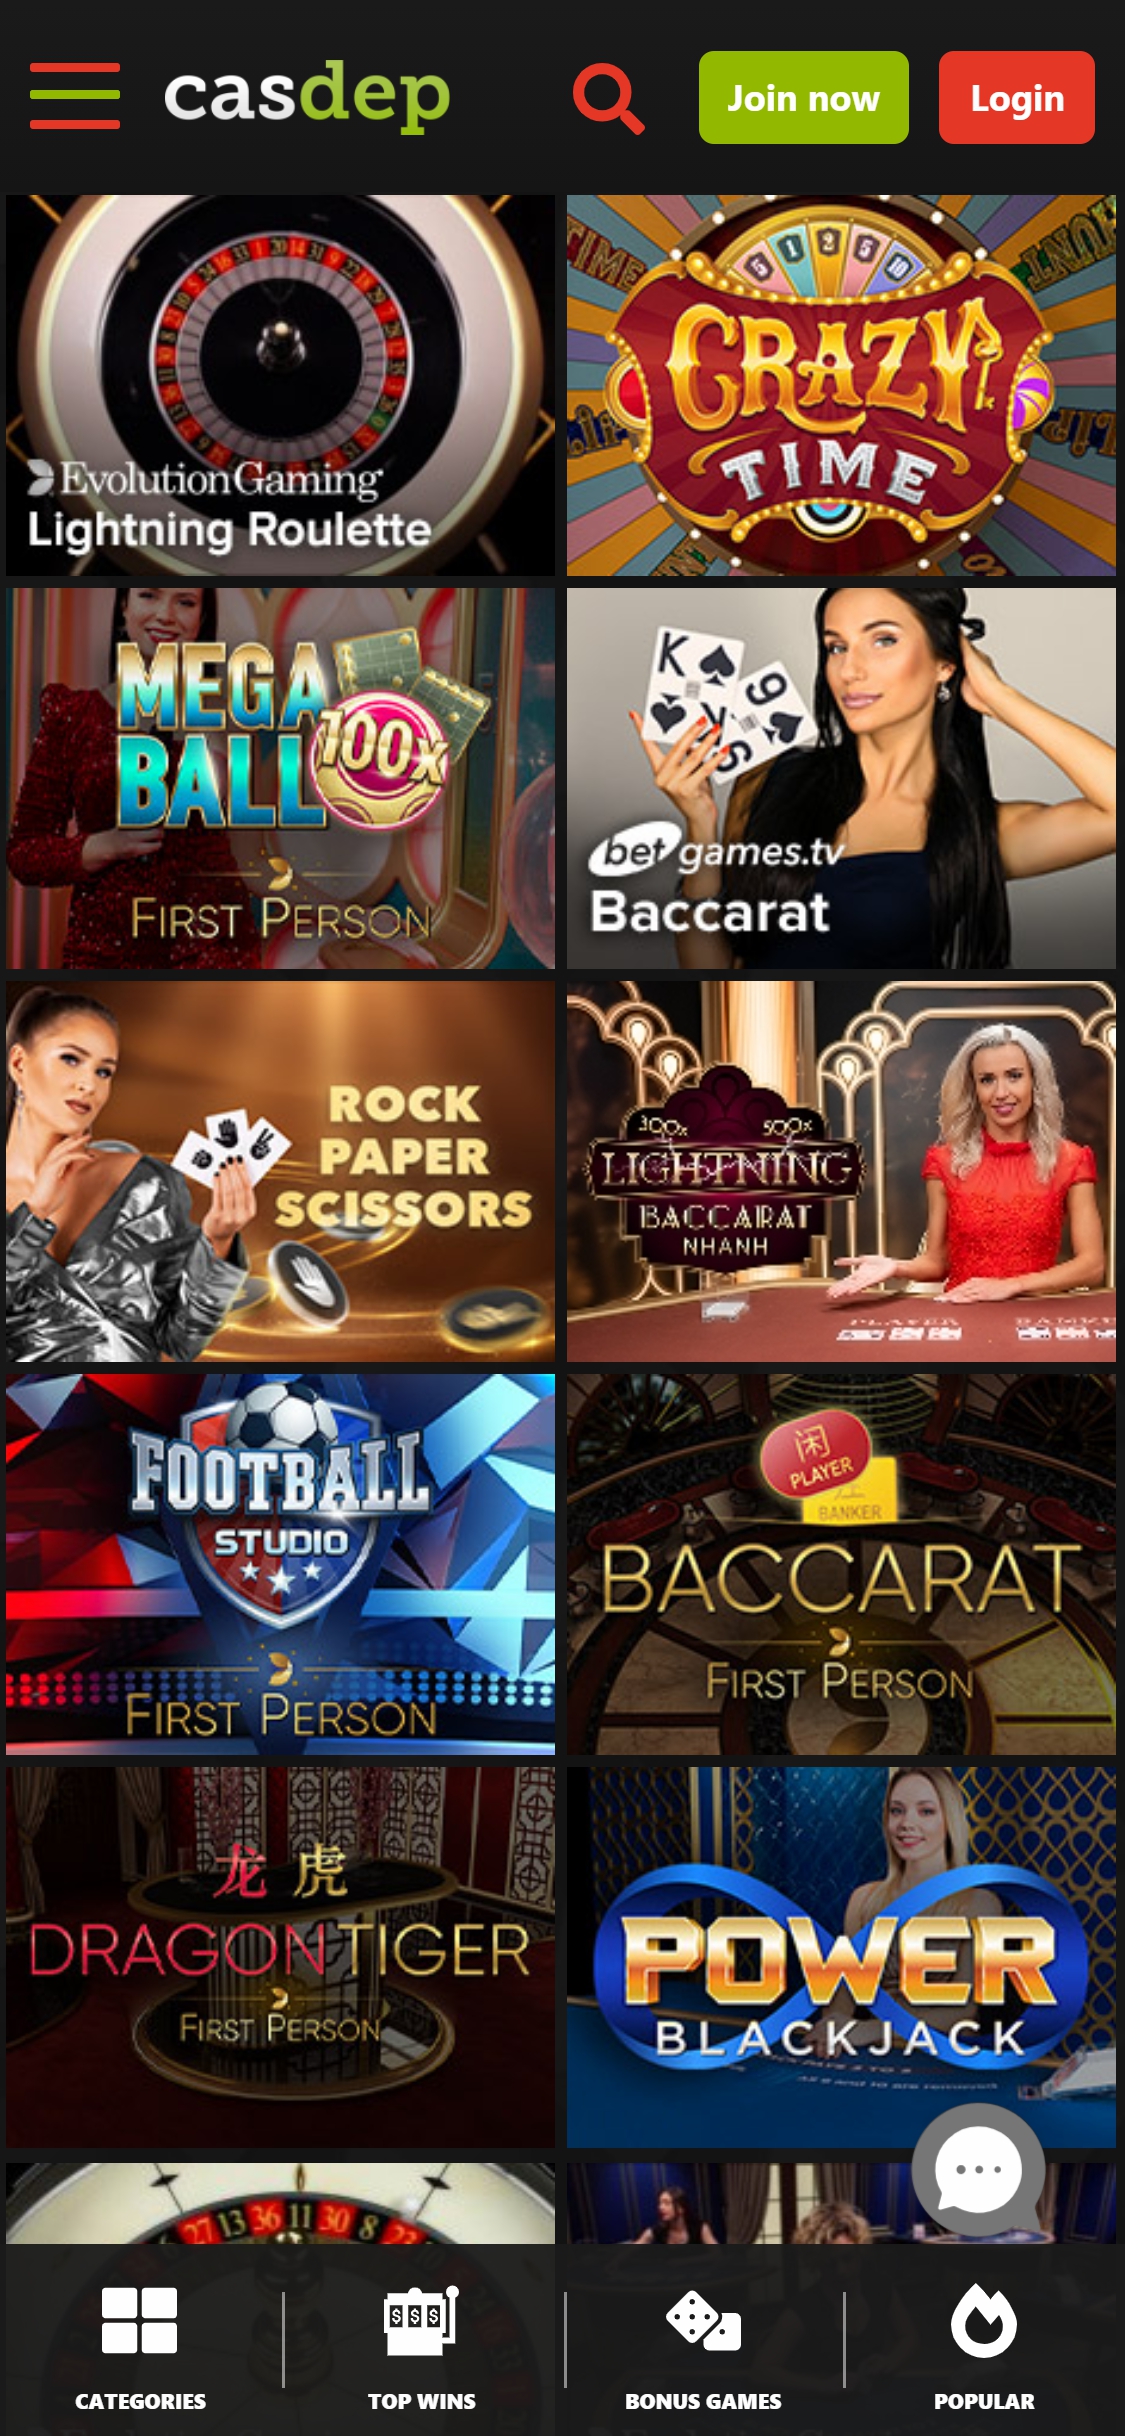 Casdep Casino Mobile Live Dealer Games Review